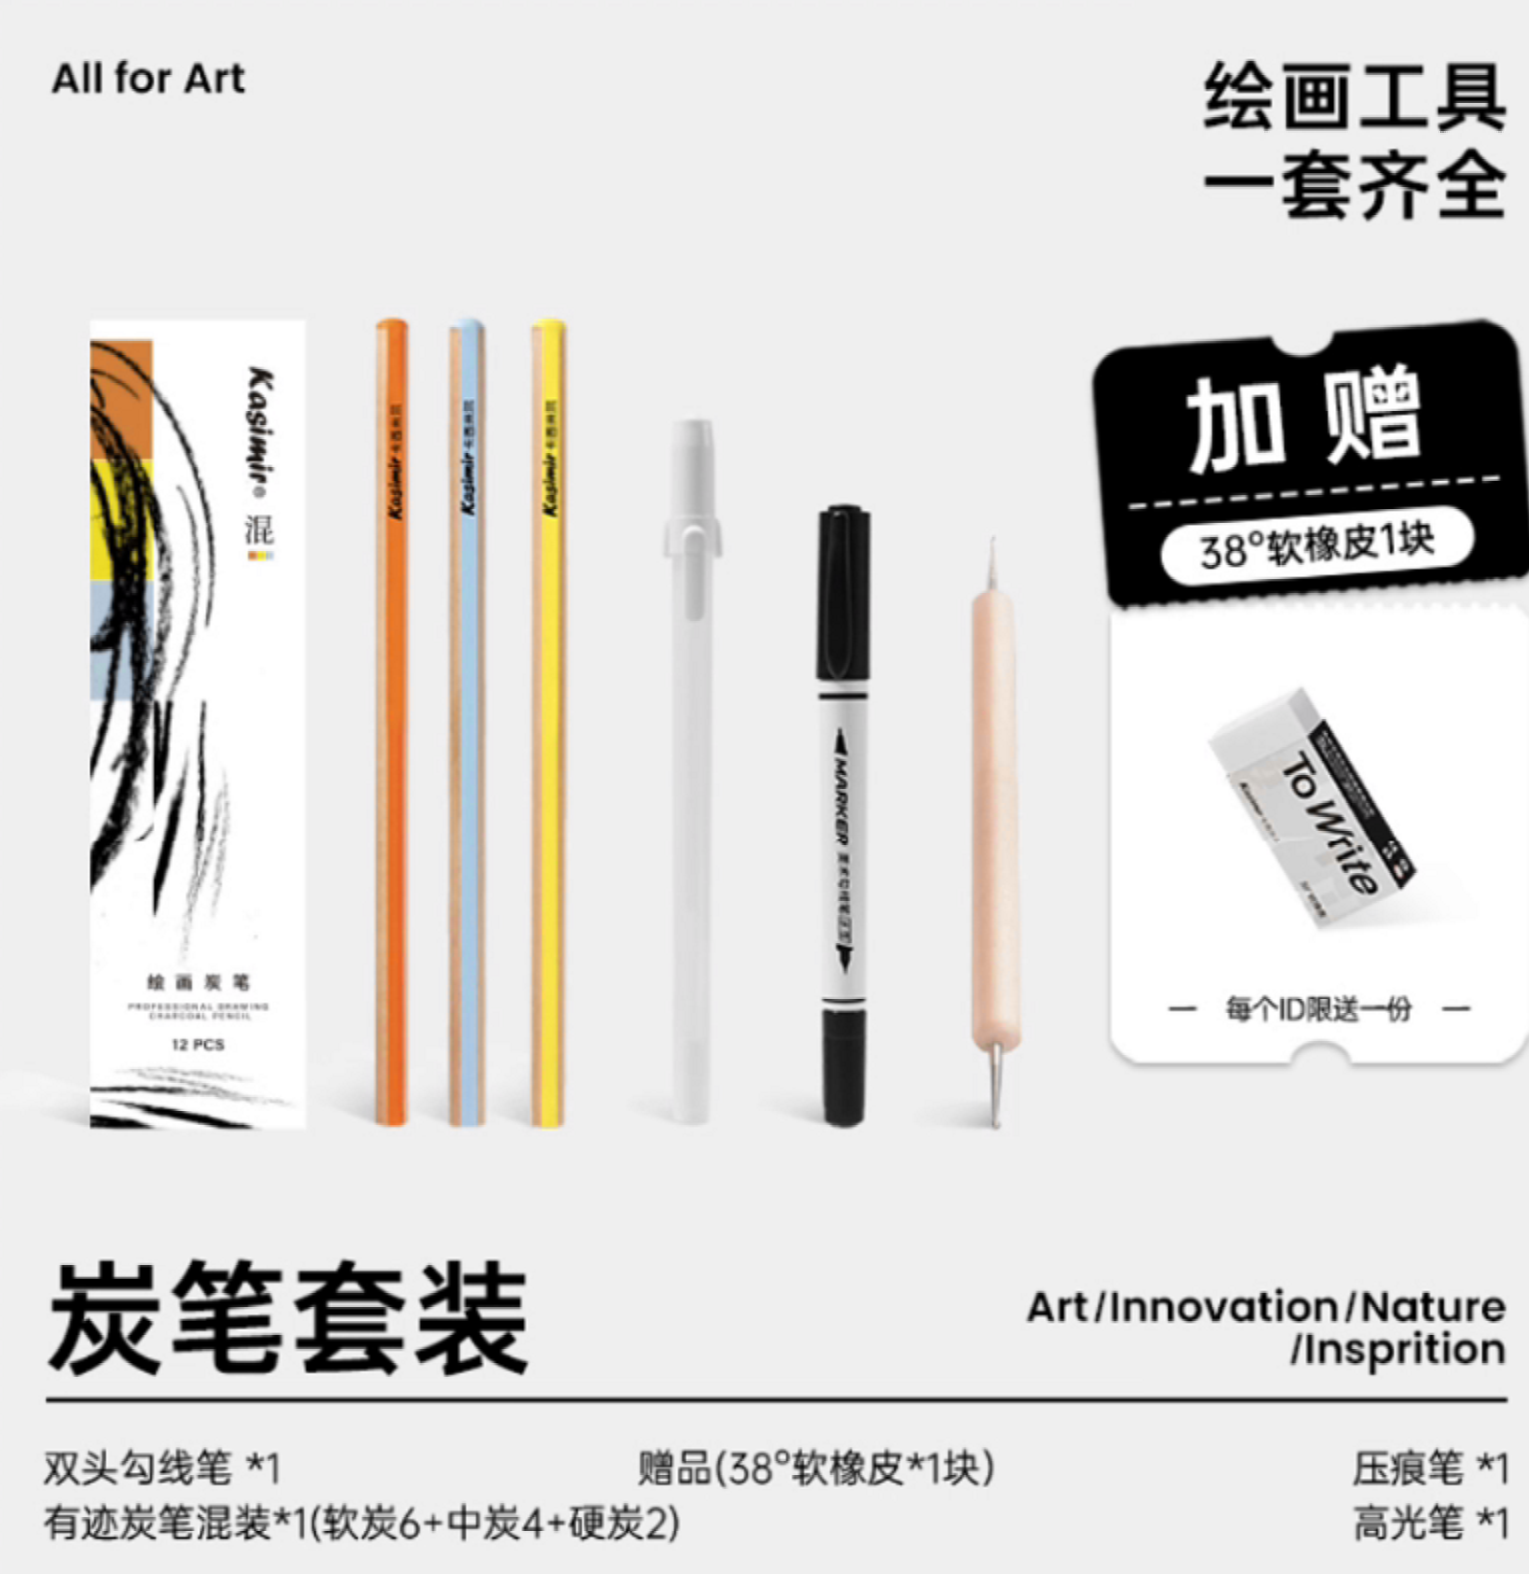 【老师推荐】卡西米尔炭笔套装新型绘画炭笔风景水墨画画工具